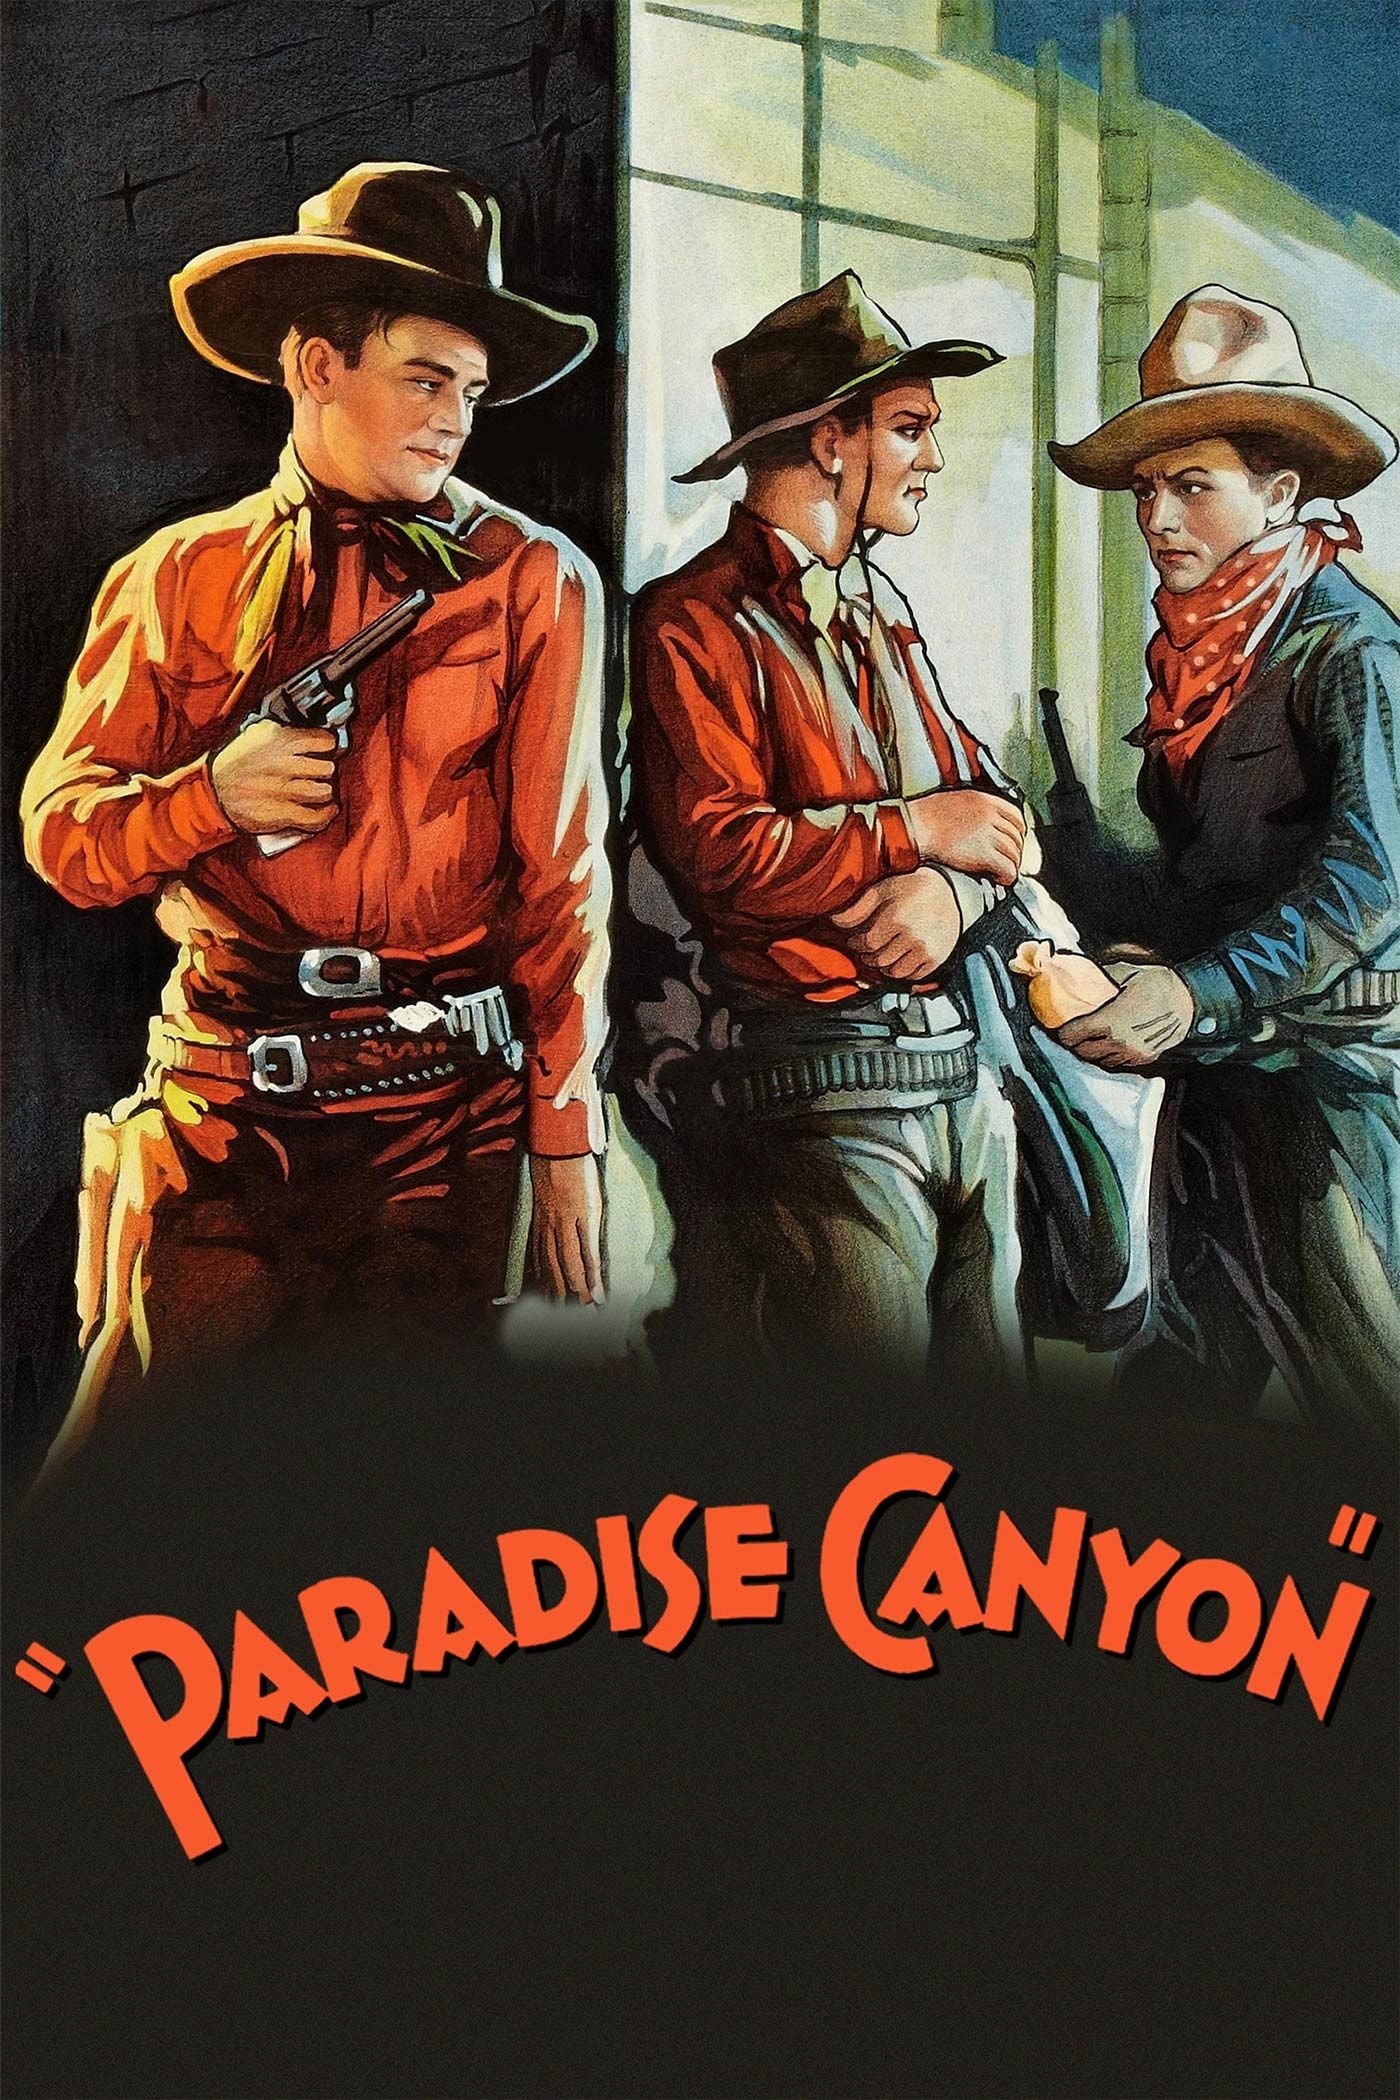 Paradise Canyon (1935)